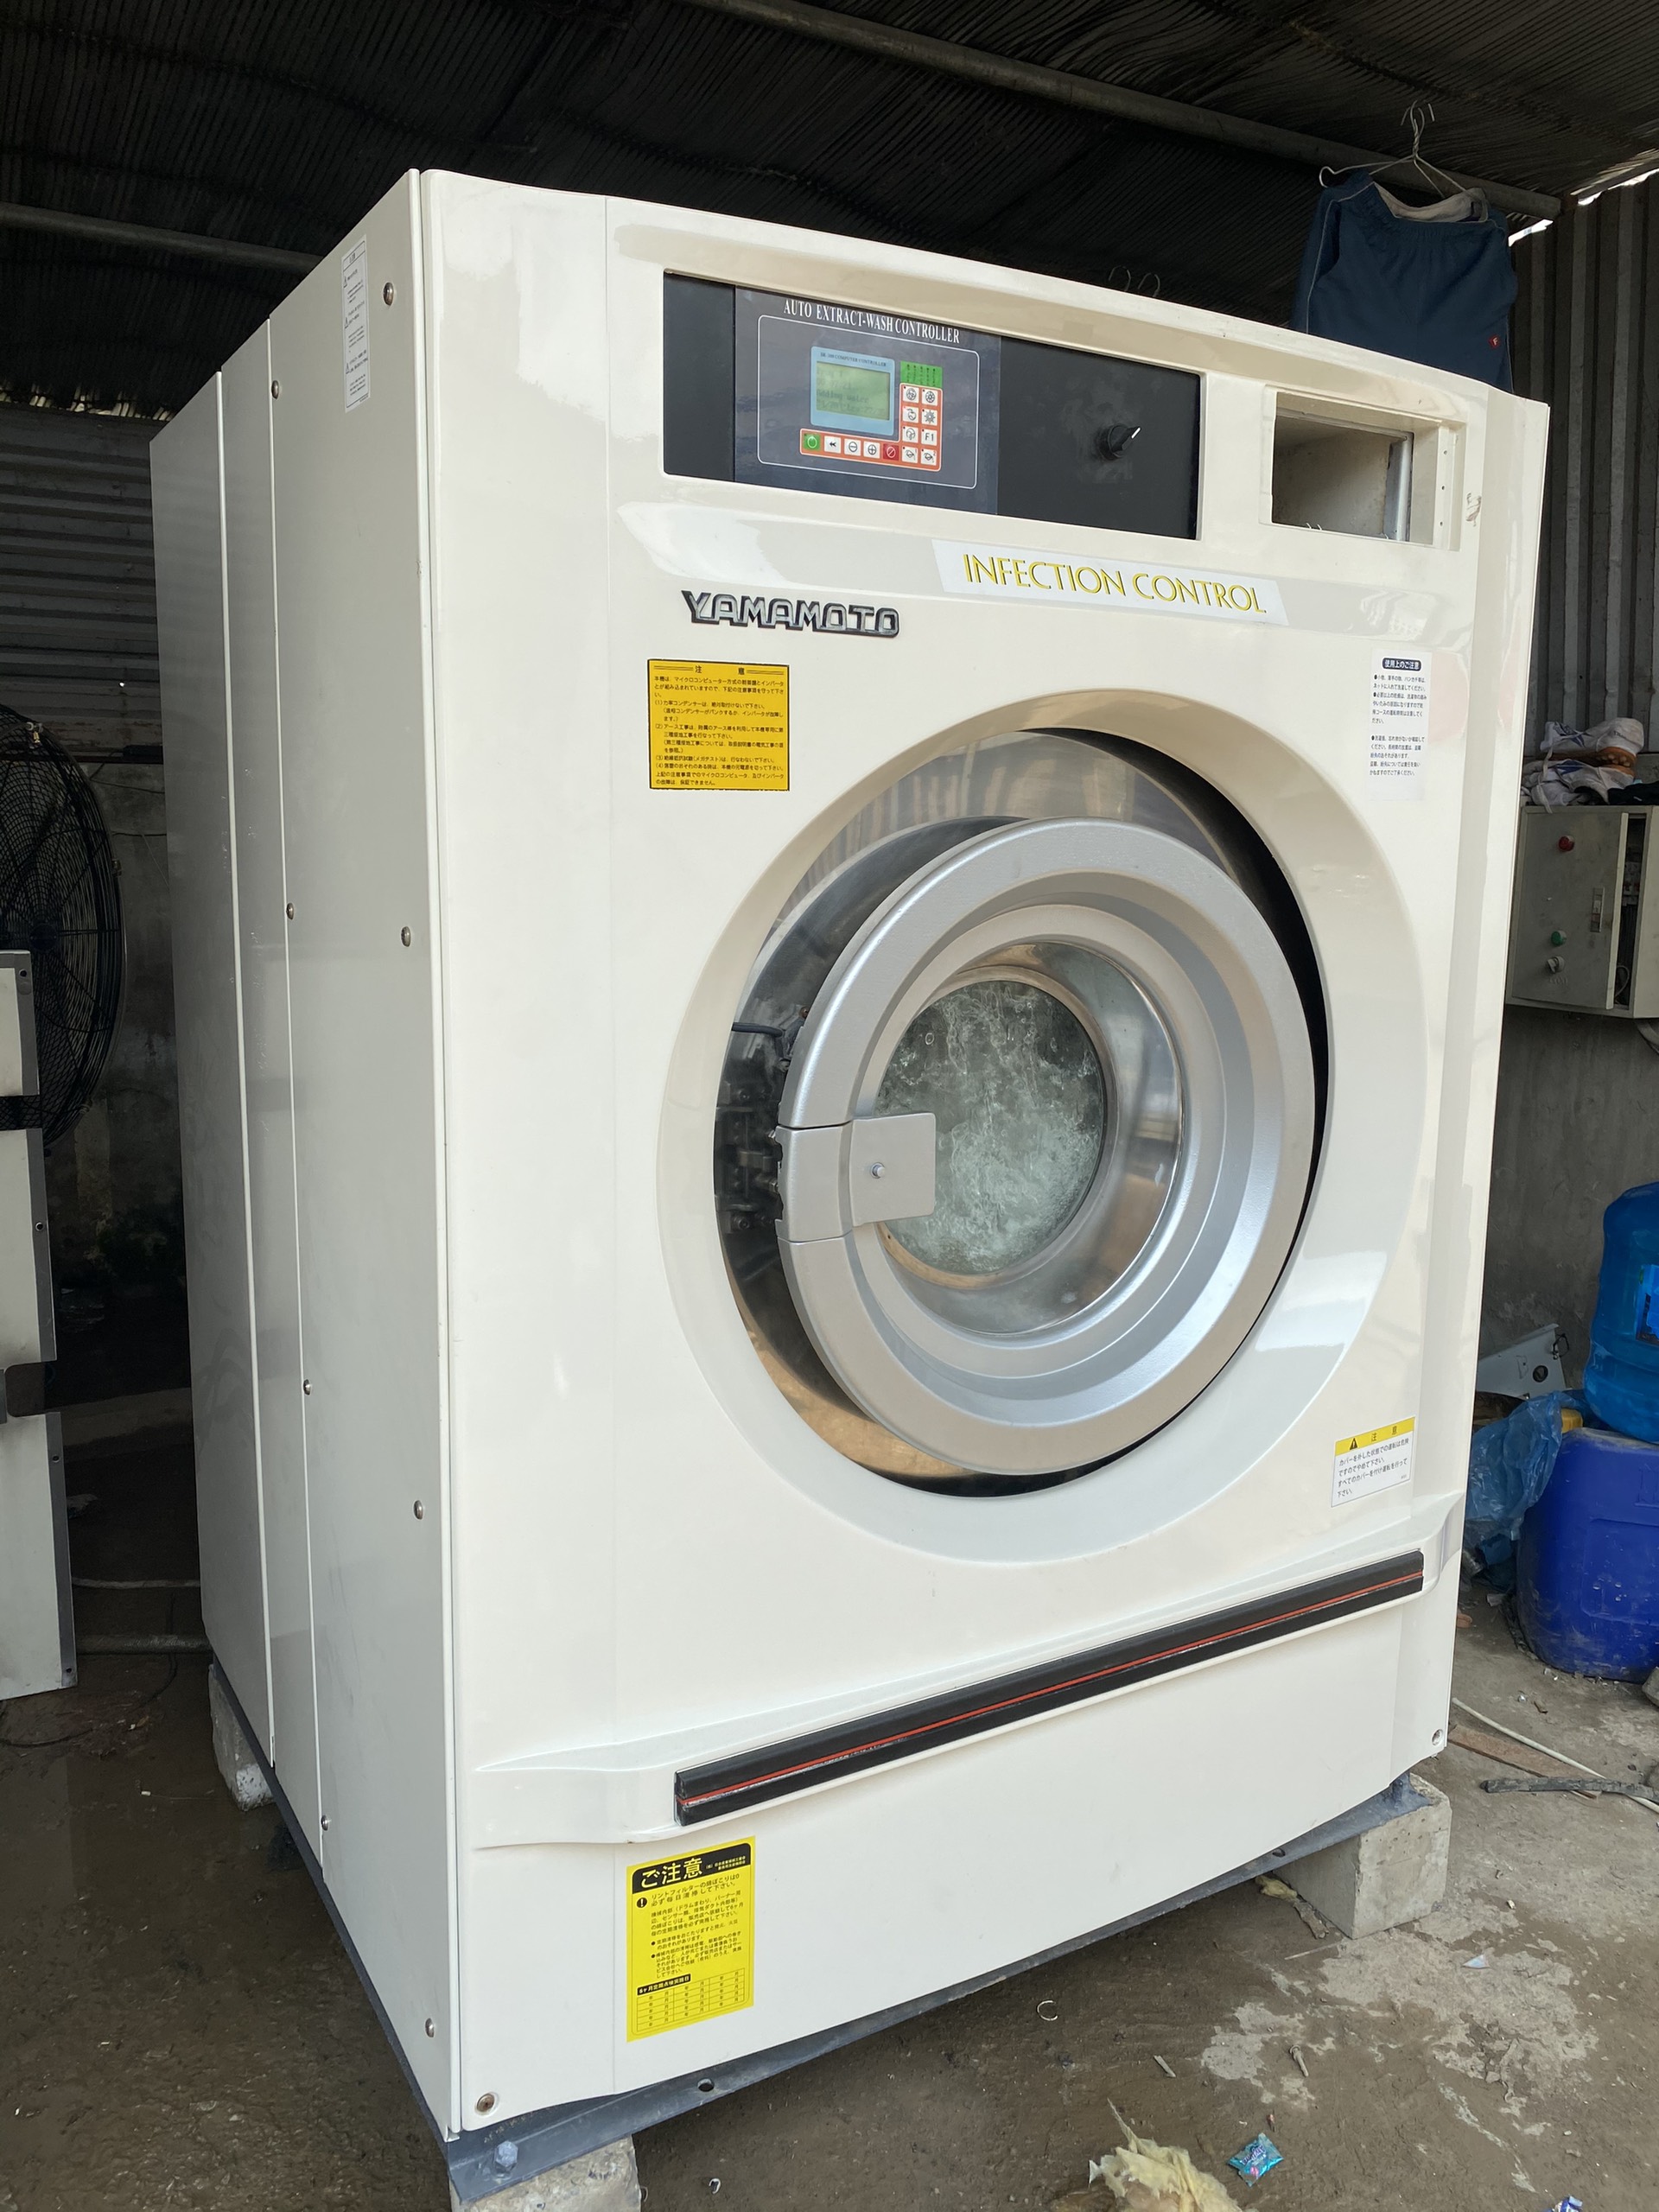 Máy giặt công nghiệp Nippre 25kg